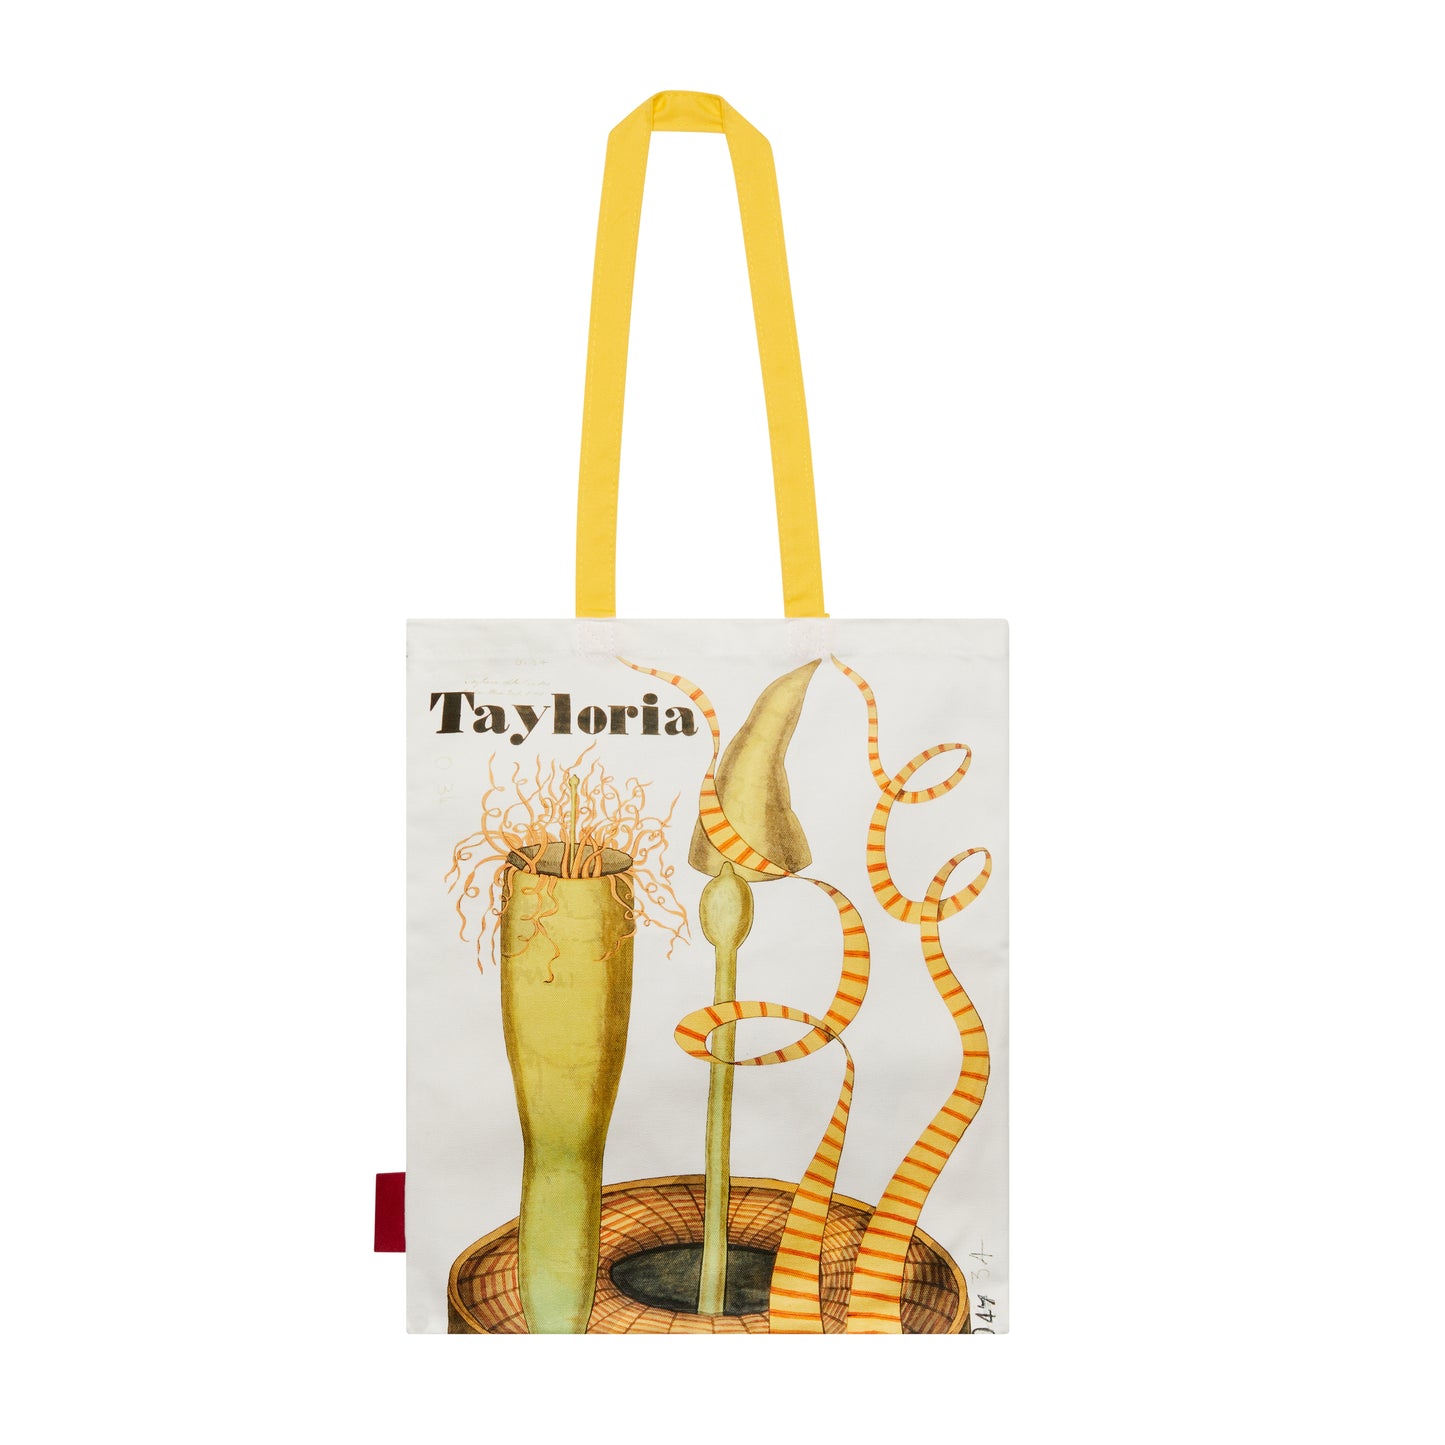 Henslow's Tayloria - Tote bag